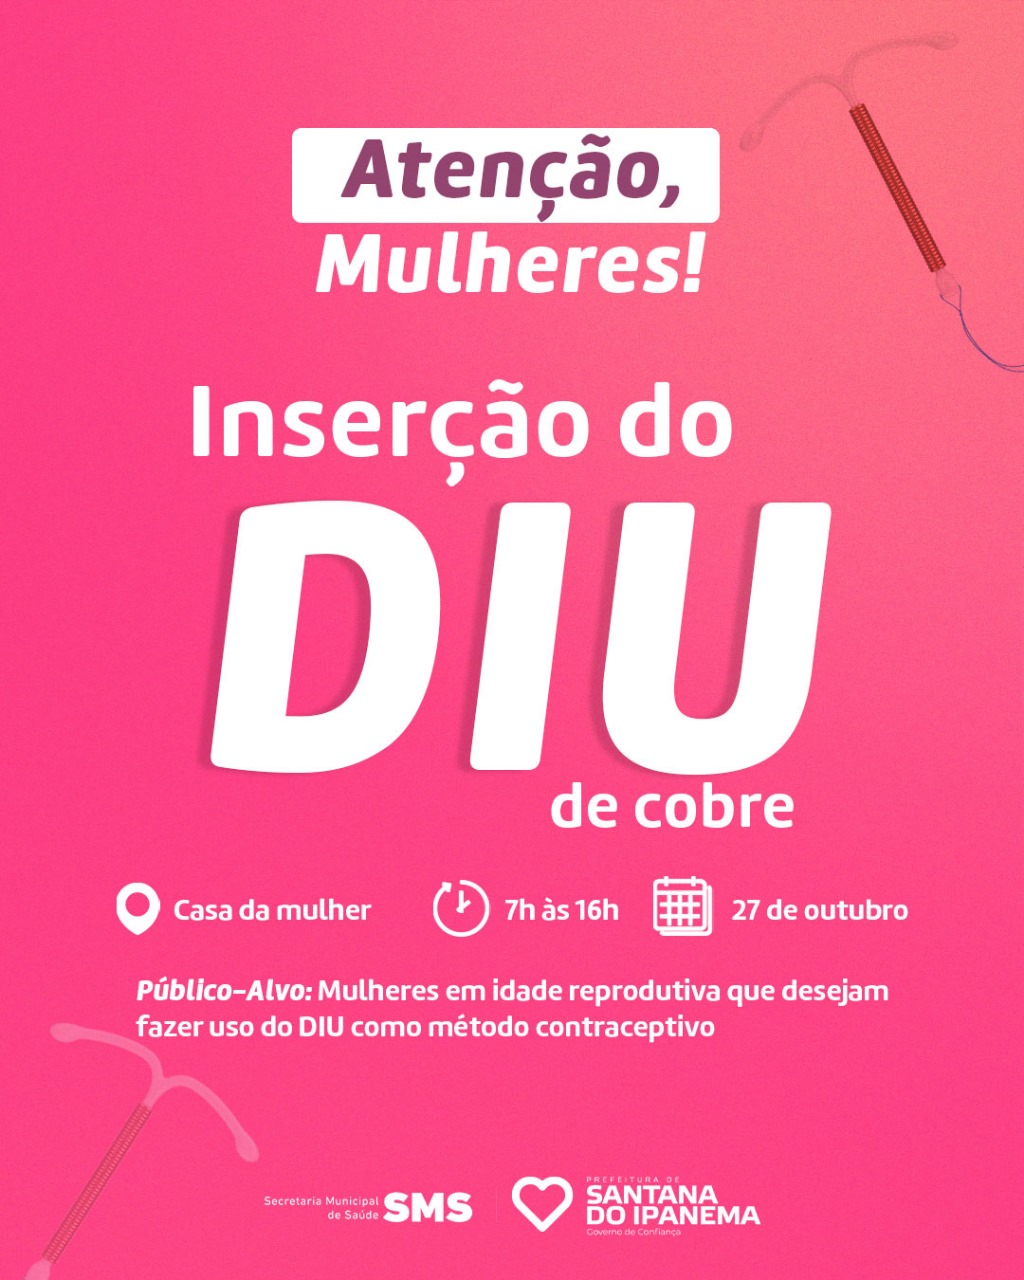 JORNAL O REGIONAL Edição 717 14/03/2020 - São pedro-Para-São paulo